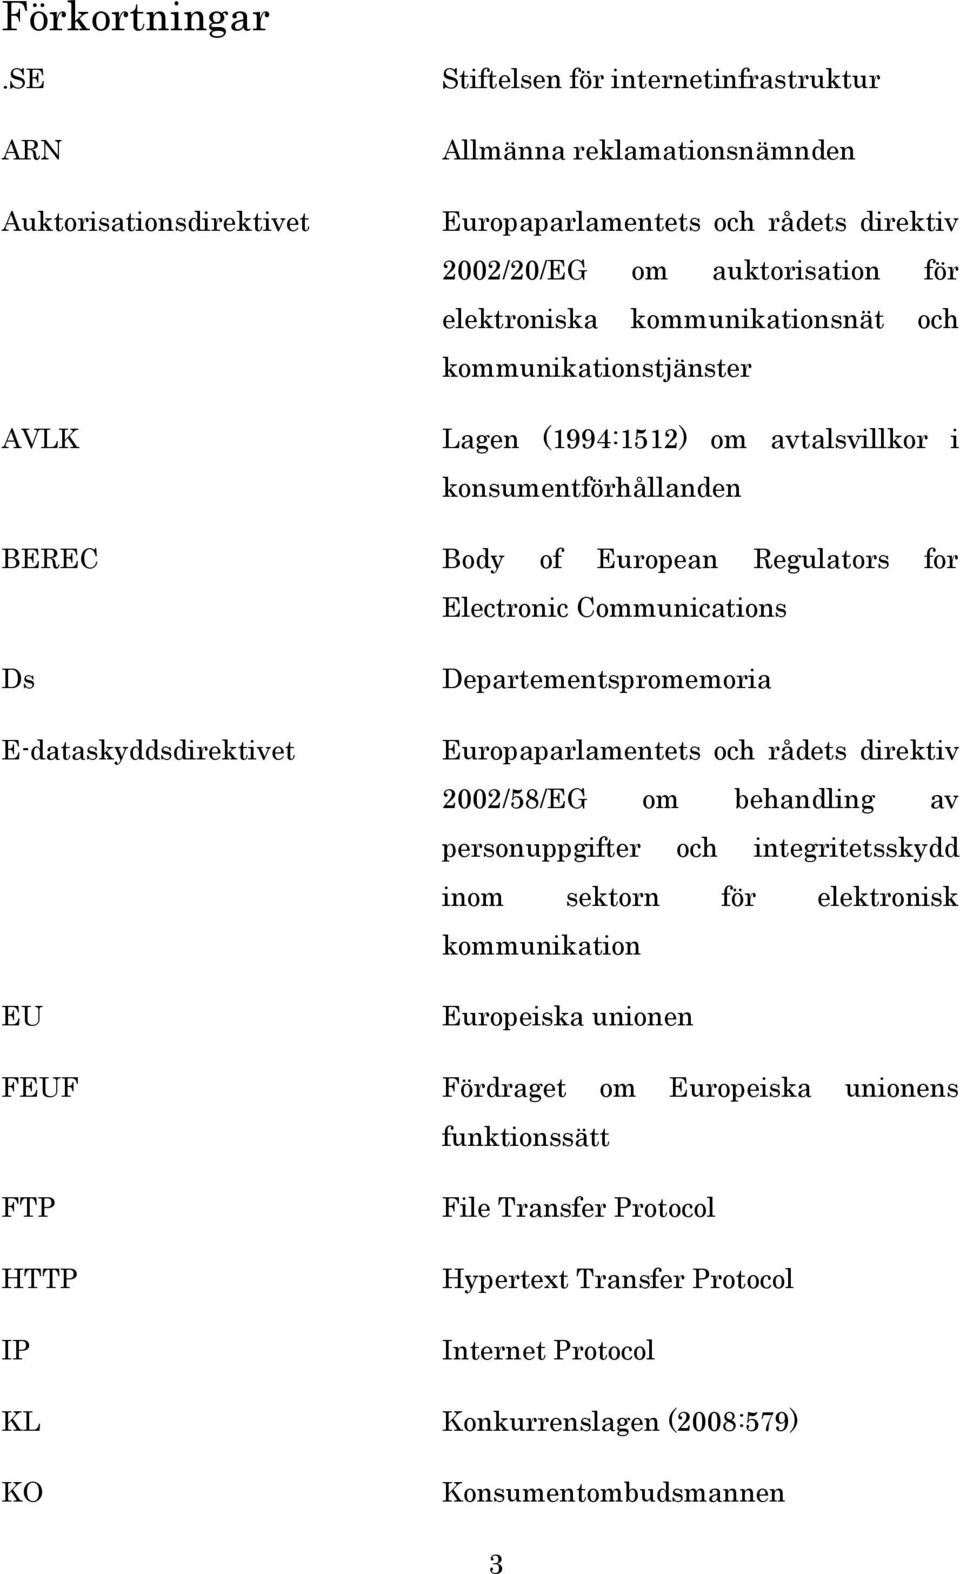 kommunikationsnät och kommunikationstjänster Lagen (1994:1512) om avtalsvillkor i konsumentförhållanden BEREC Body of European Regulators for Electronic Communications Ds E-dataskyddsdirektivet